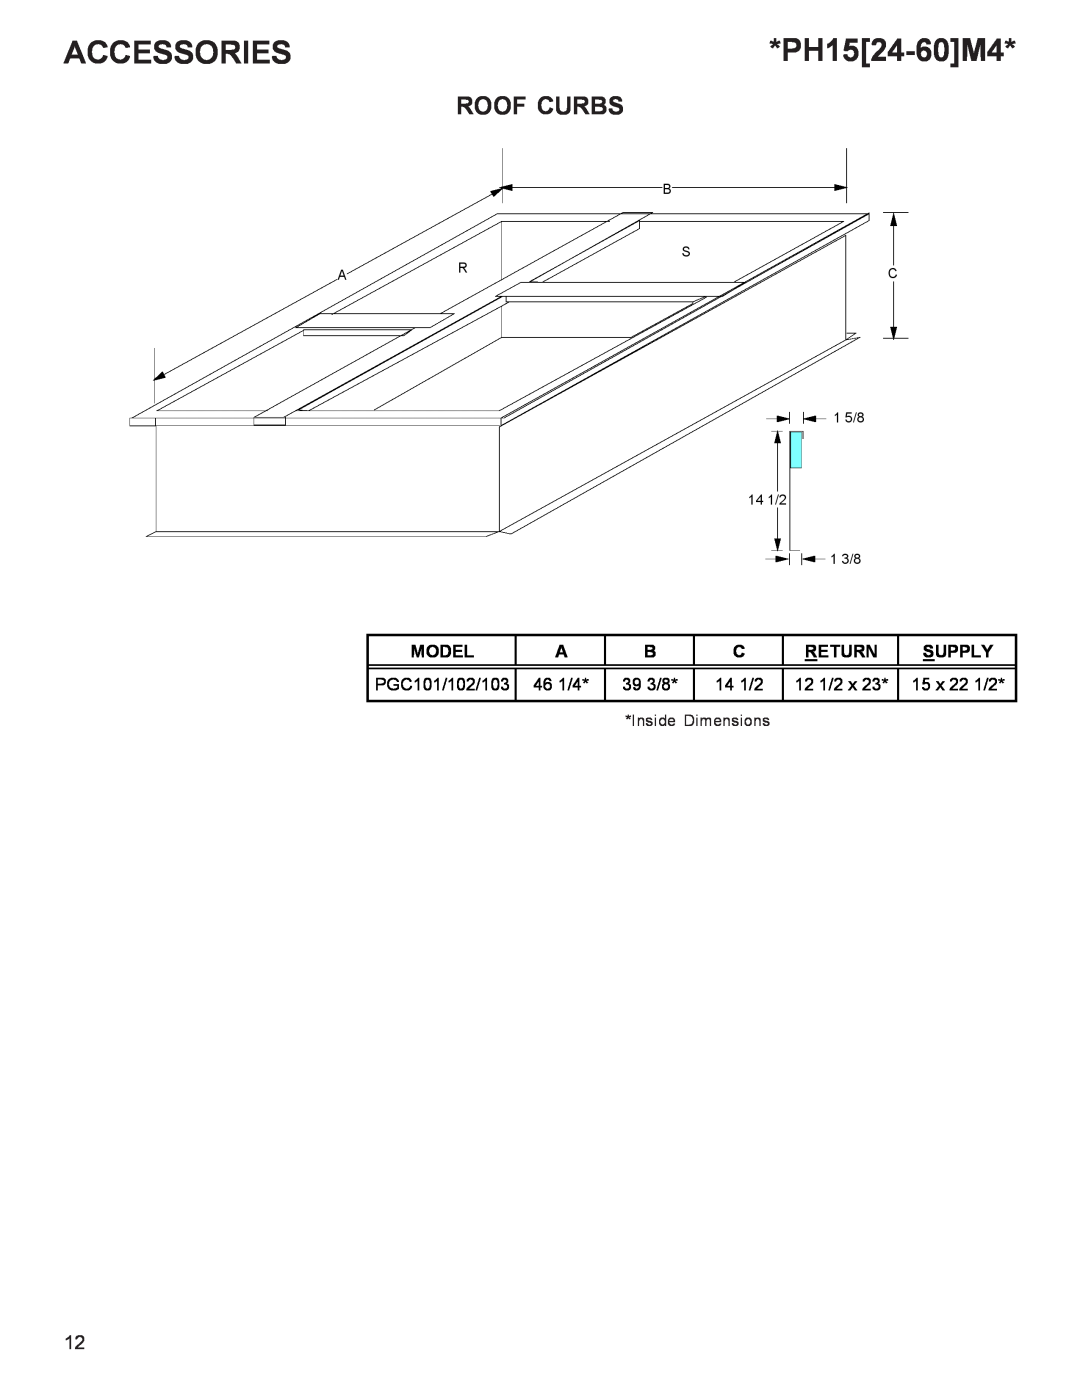 Goodman Mfg R-410A manual Roof Curbs, Accessories, PH1524-60M4 